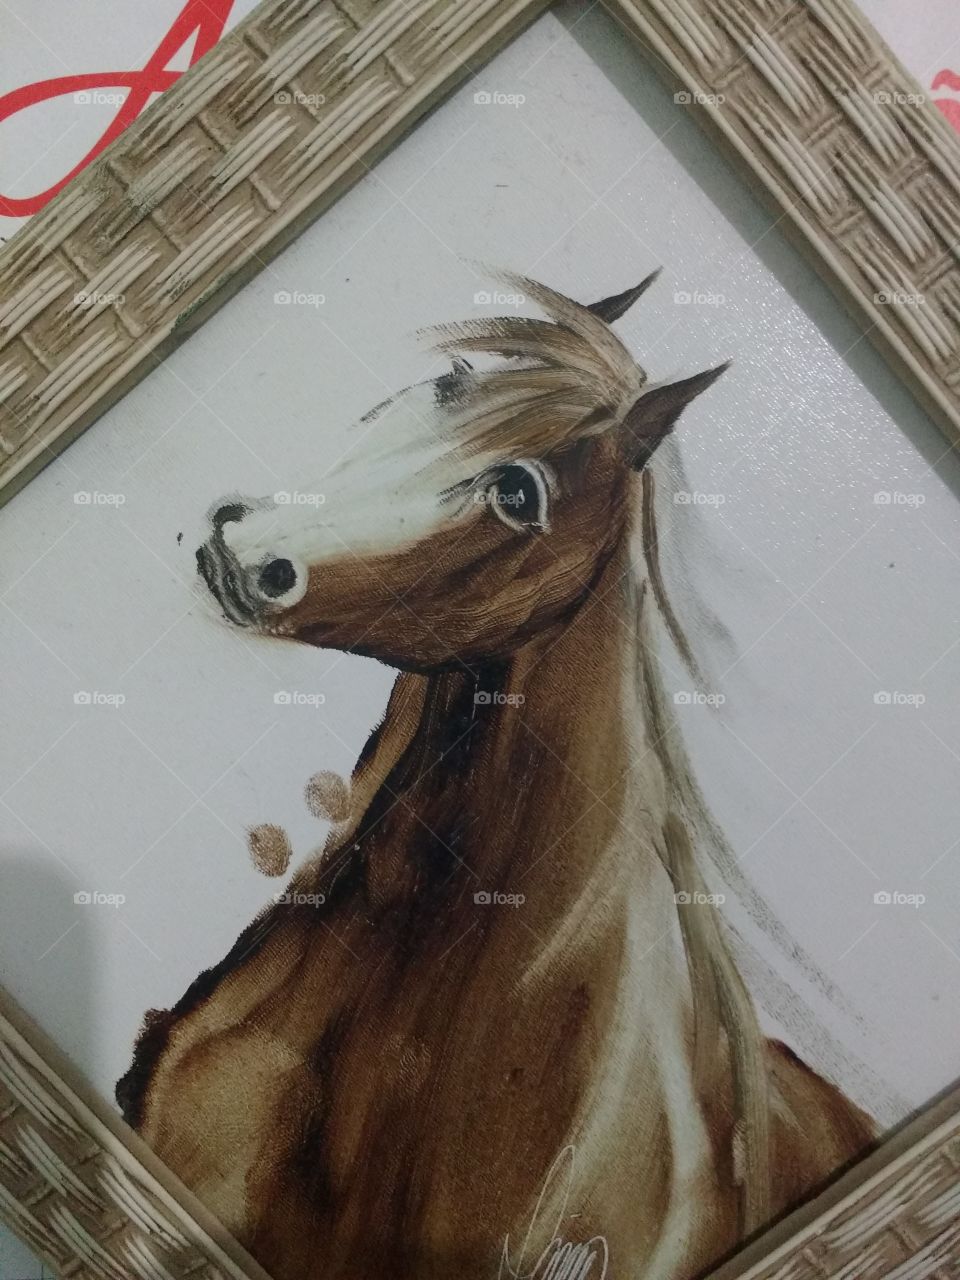 desenho de cavalo